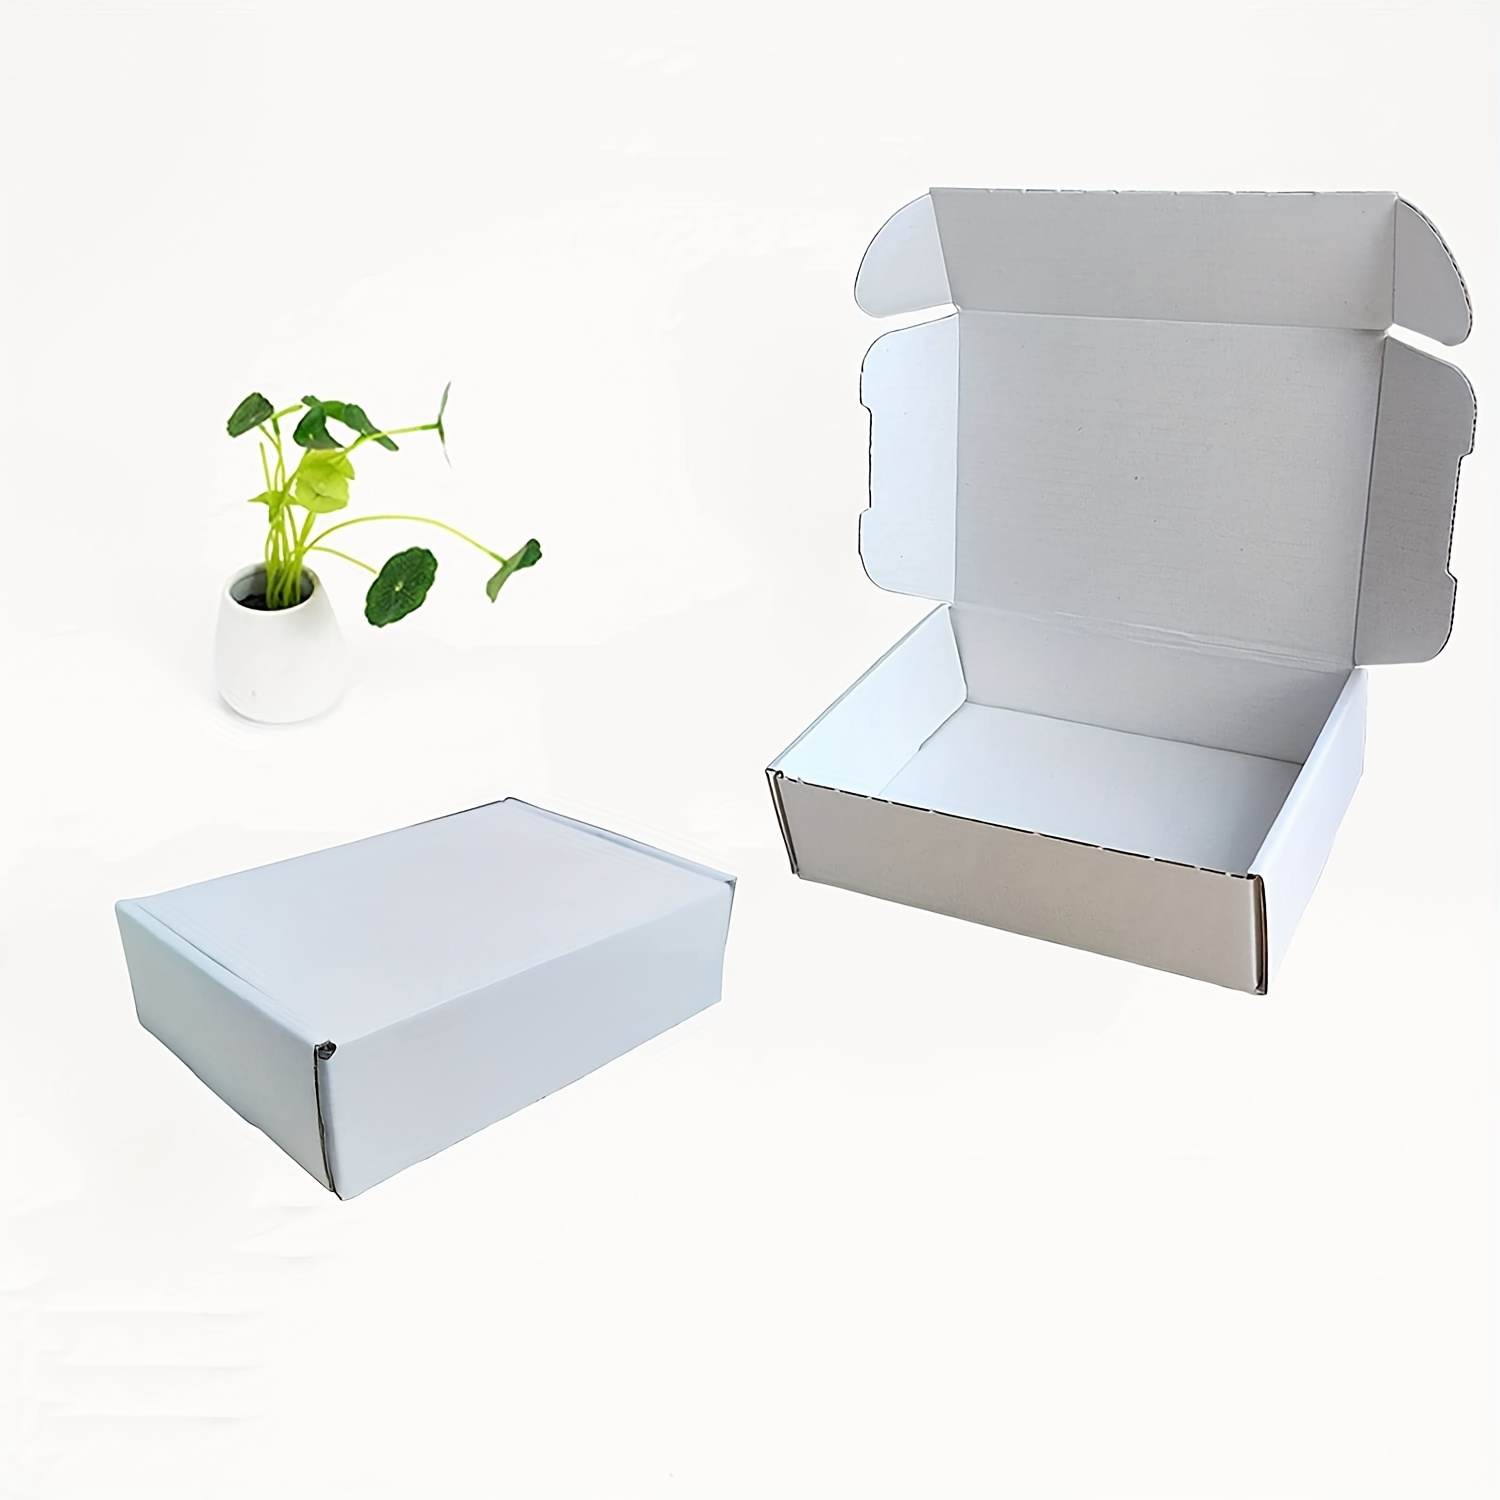 3 geniales diseños de cajas de carton corrugado  Hacer cajas de regalo,  Cajas de regalo, Cajas de carton corrugado